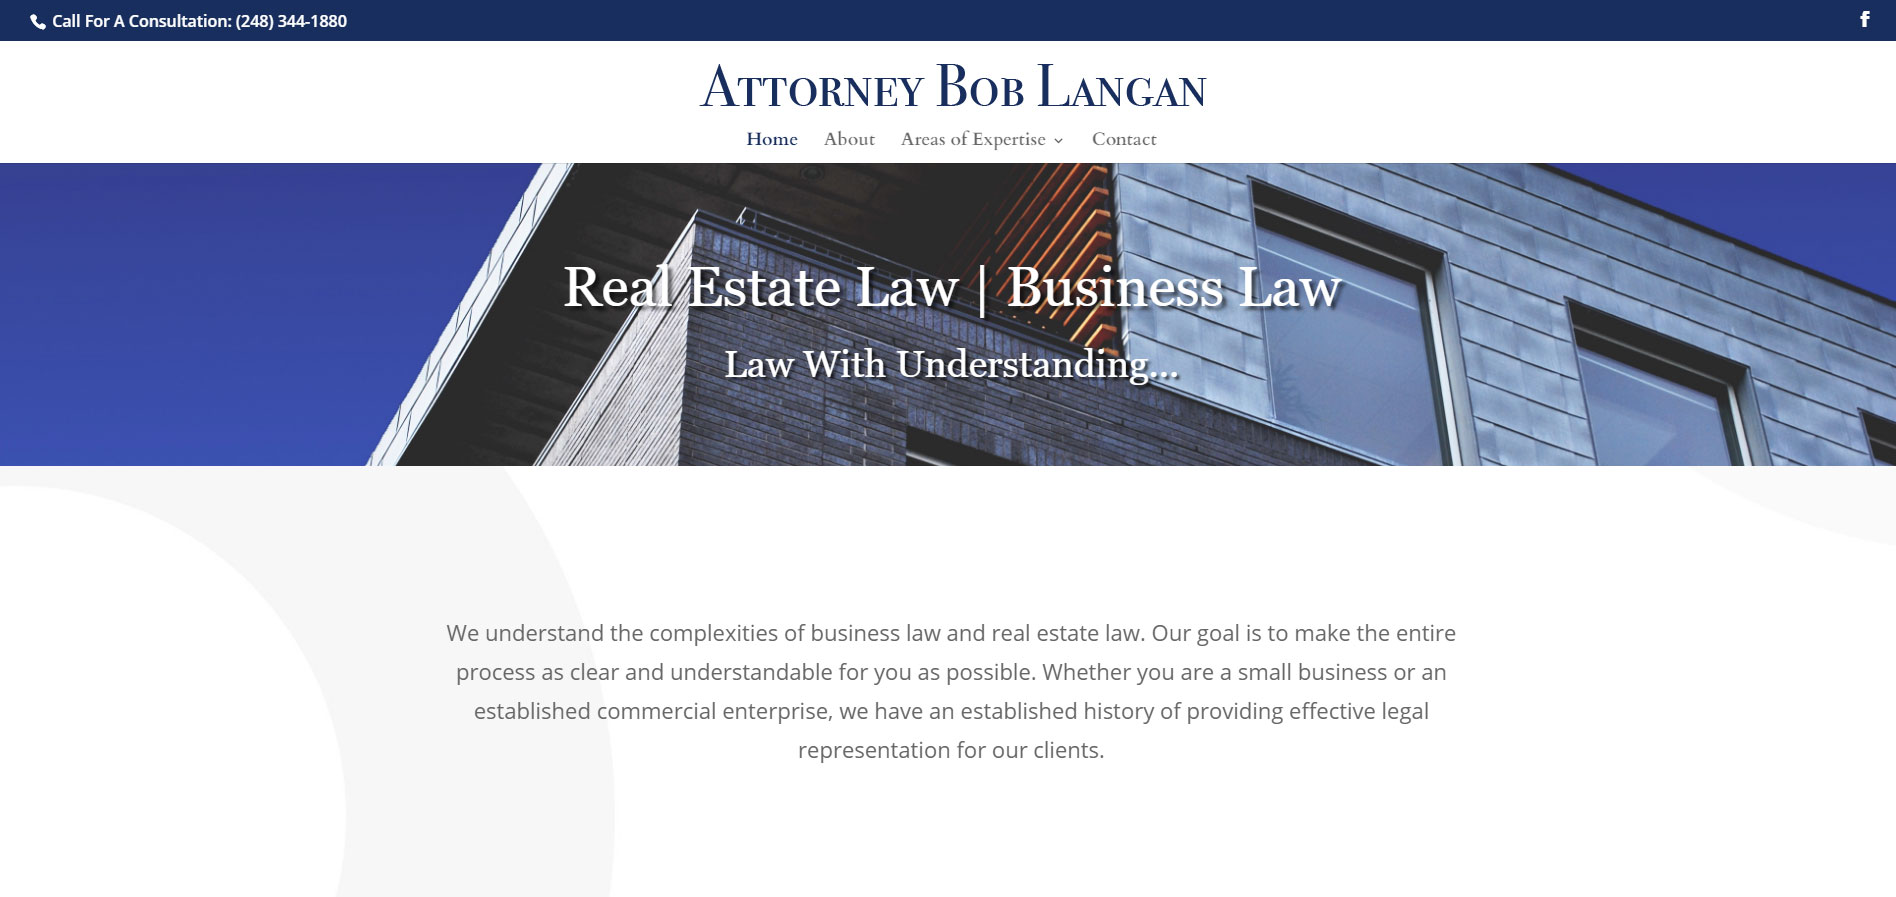 Attorney Bob Langan